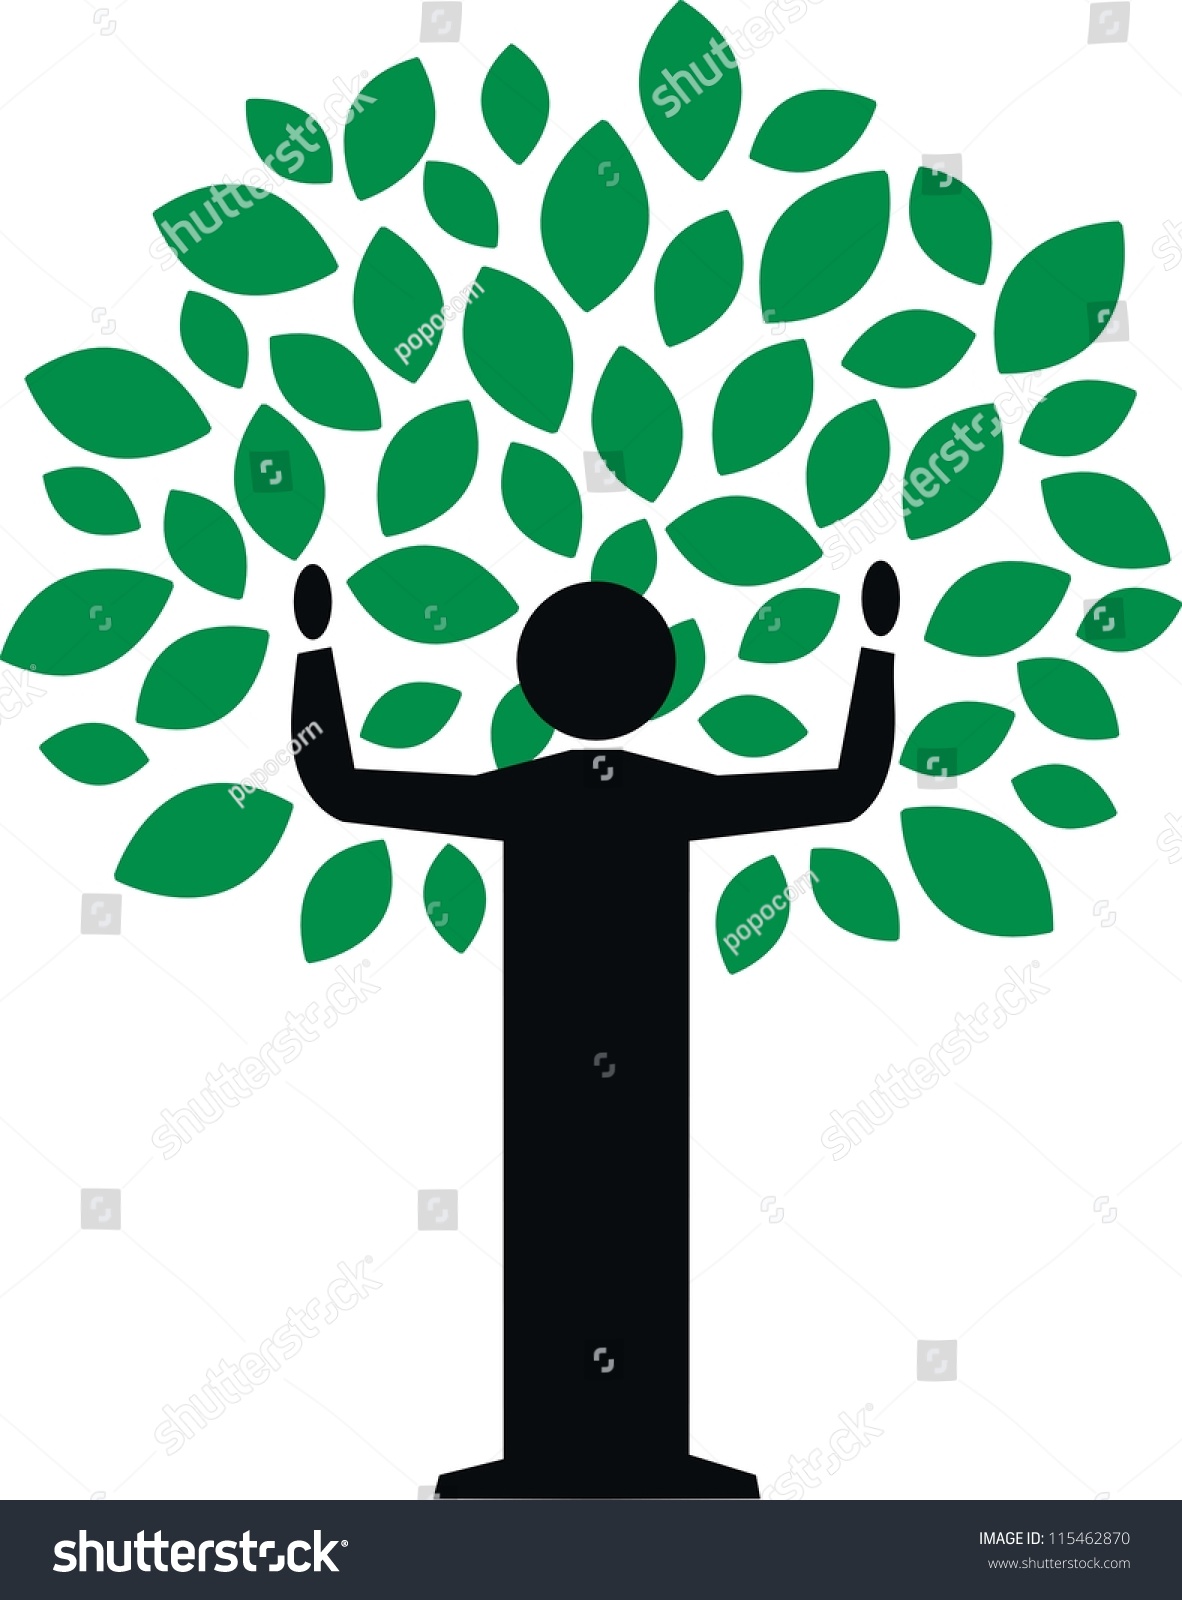 Green Tree Stock Vector Illustration 115462870 : Shutterstock